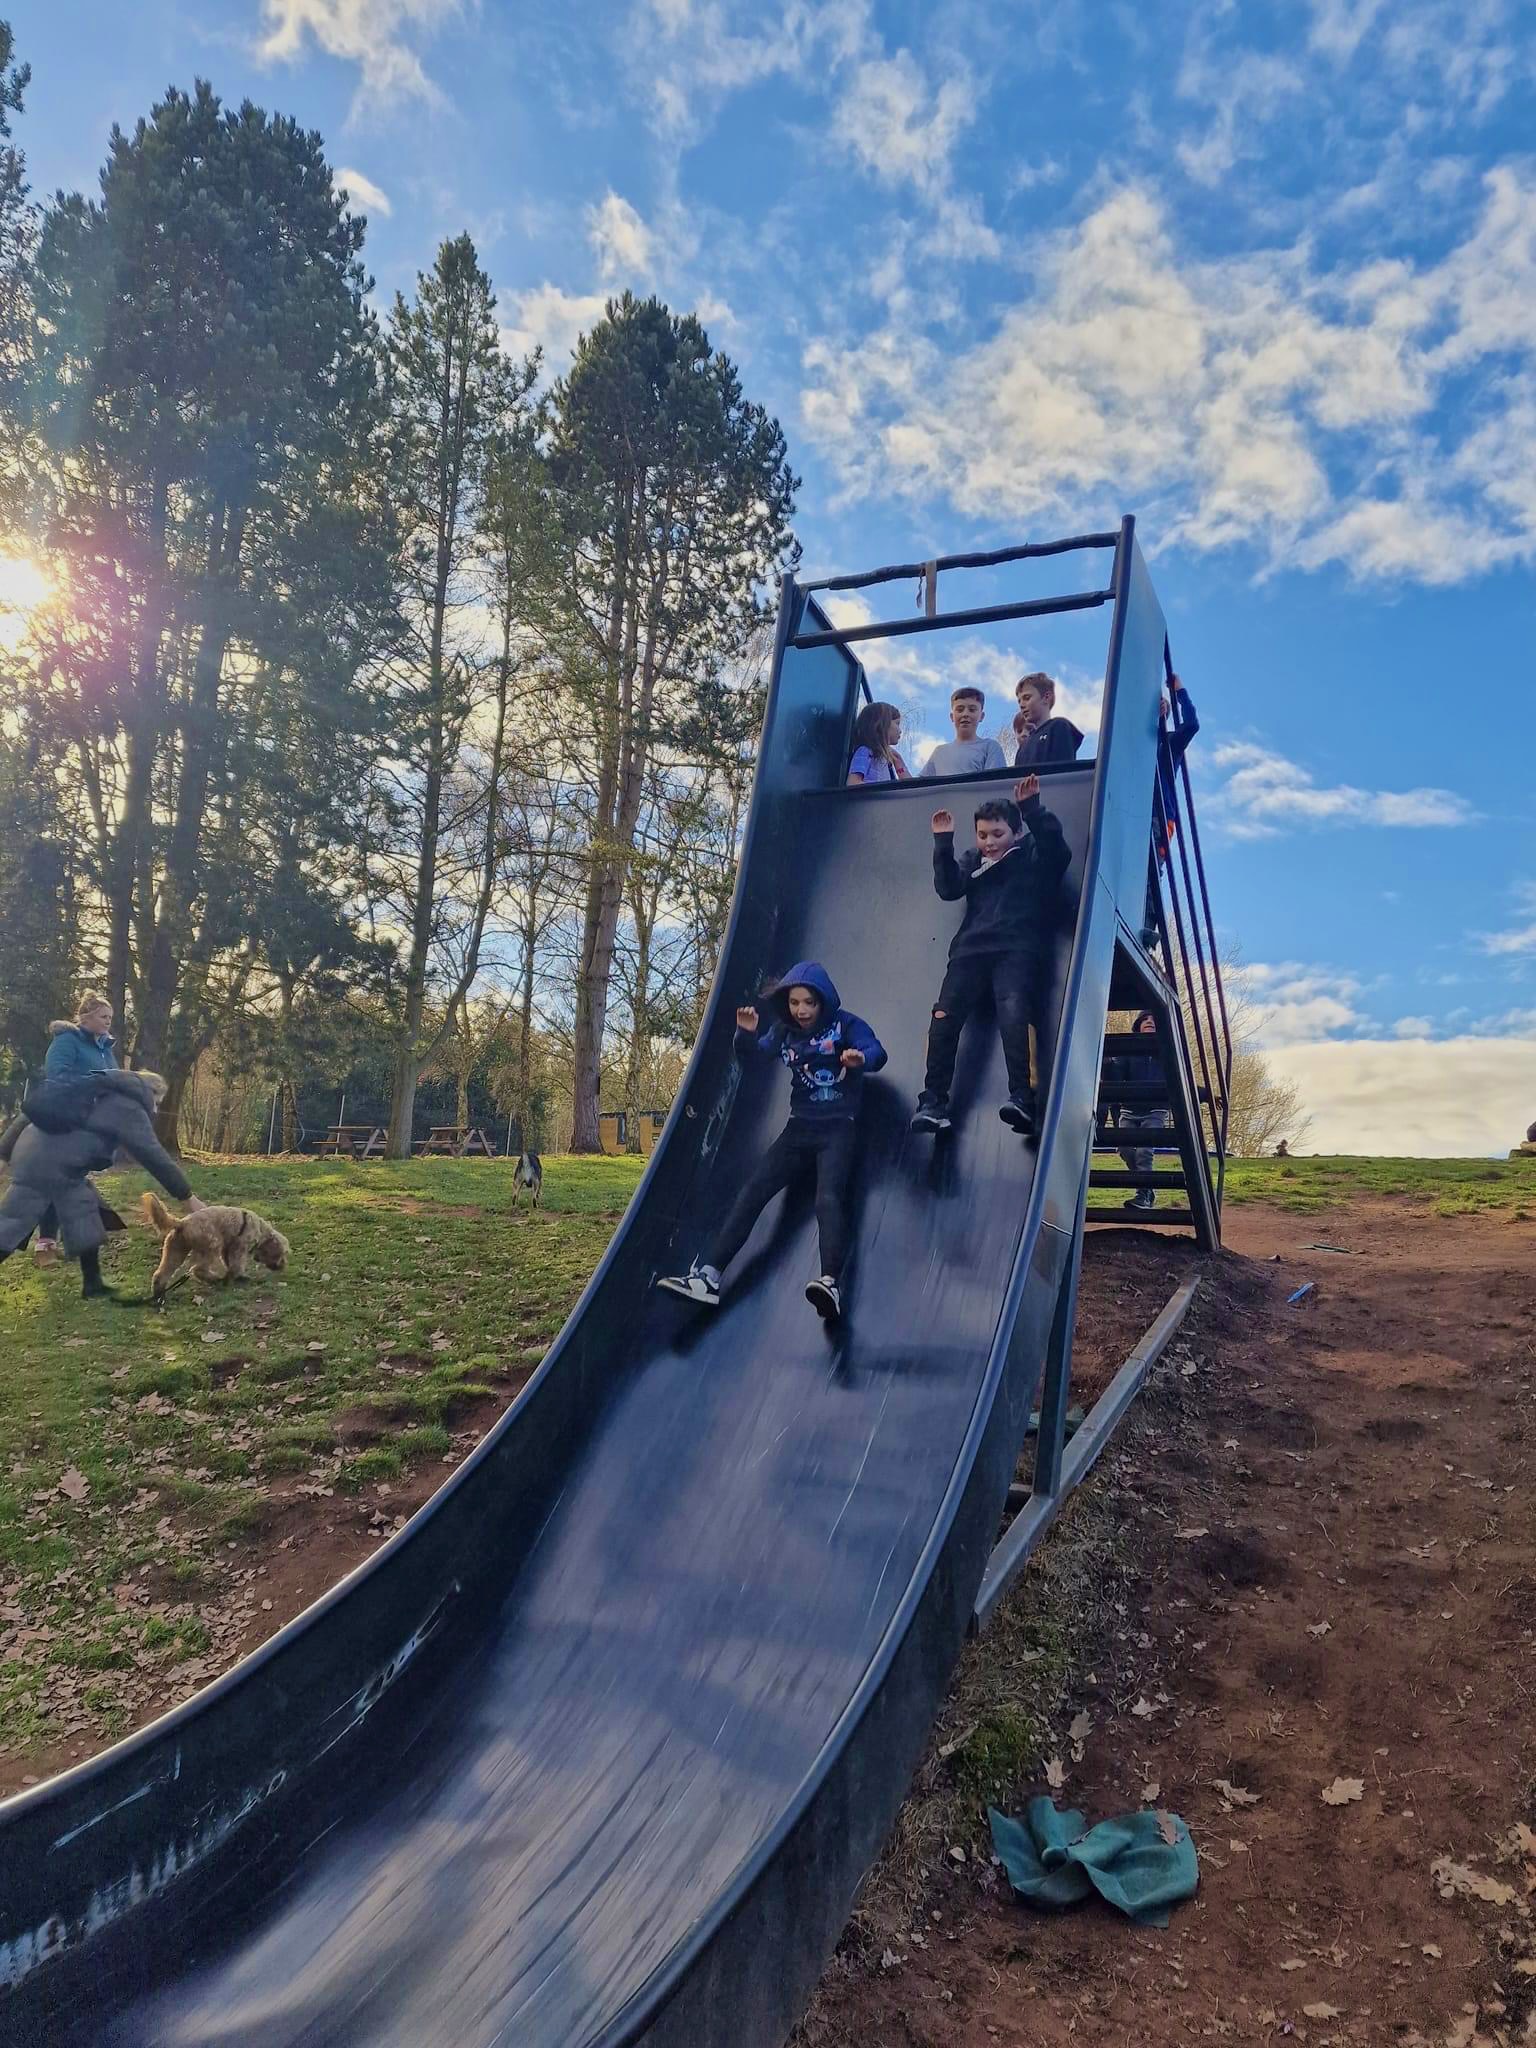 kids on Slide at Habberley trail